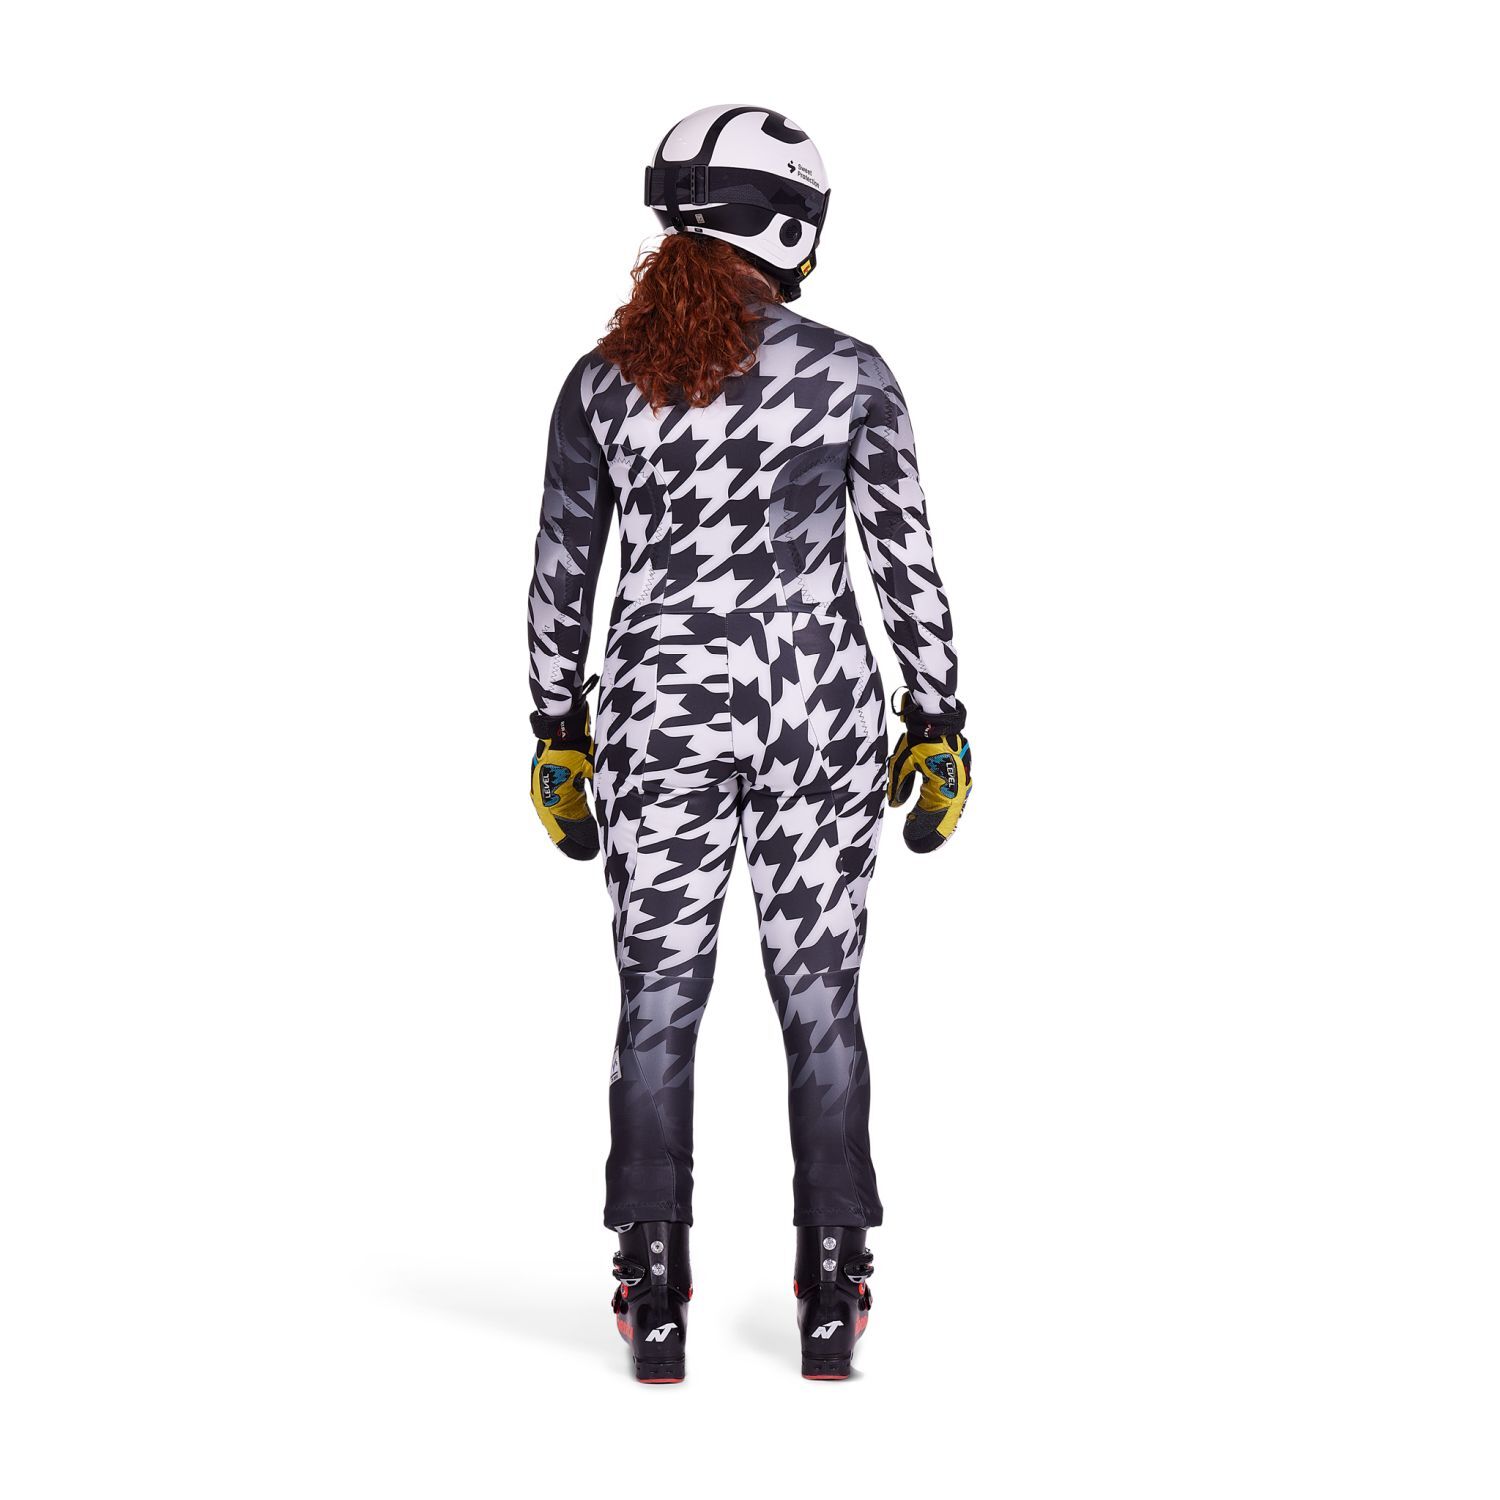 Spyder Women's Performance GS Race Suit - Volcano Vonn - TeamSkiWear